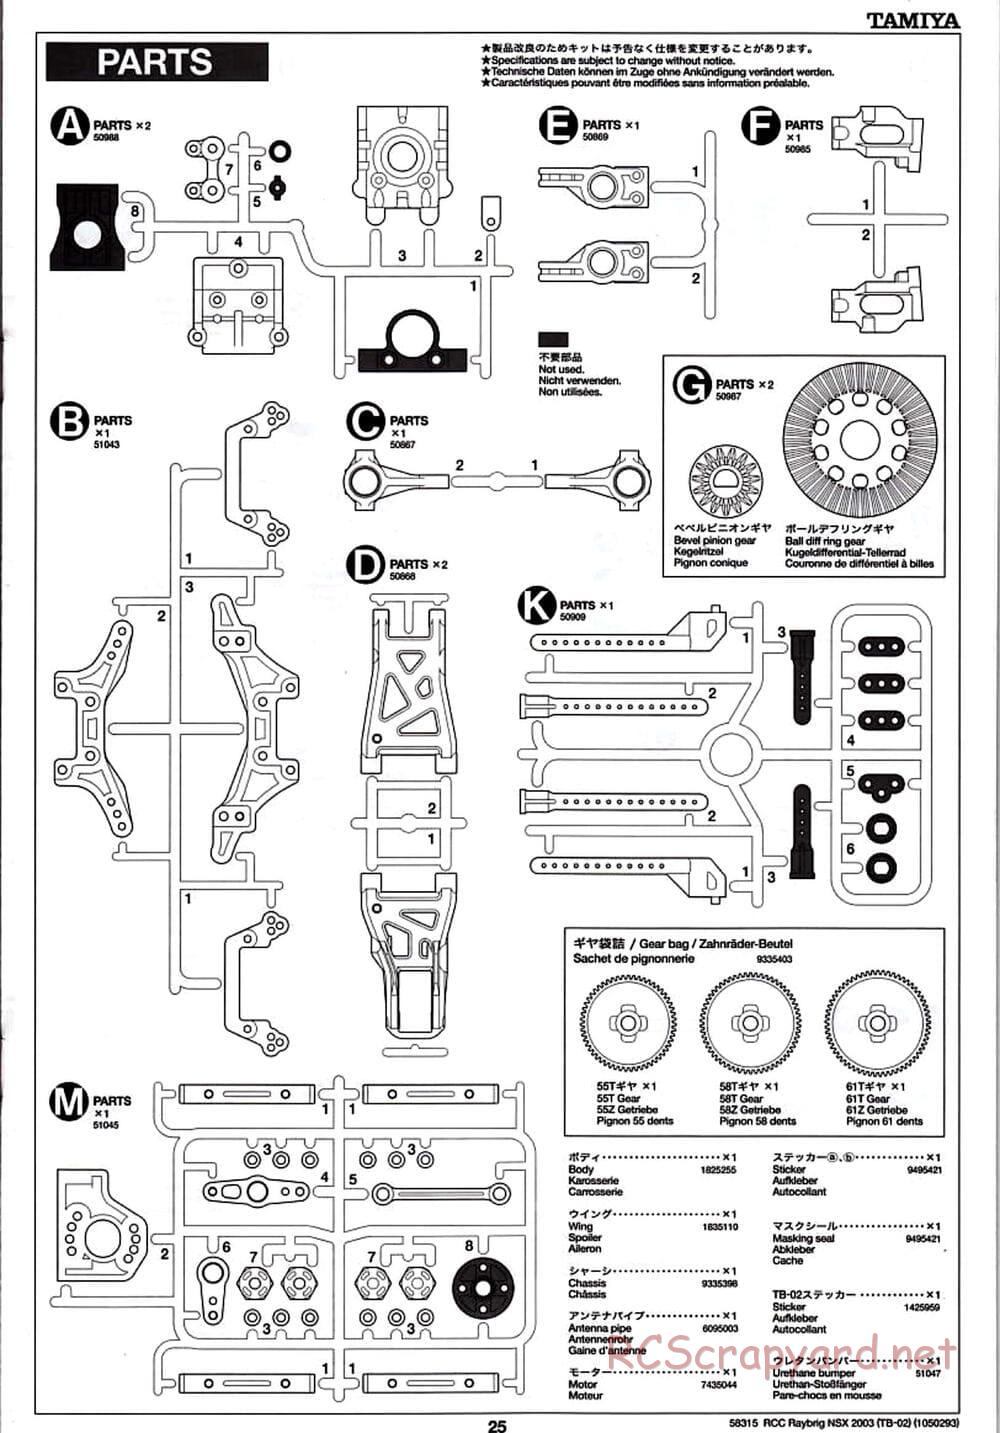 Tamiya - Raybrig NSX 2003 - TB-02 Chassis - Manual - Page 25